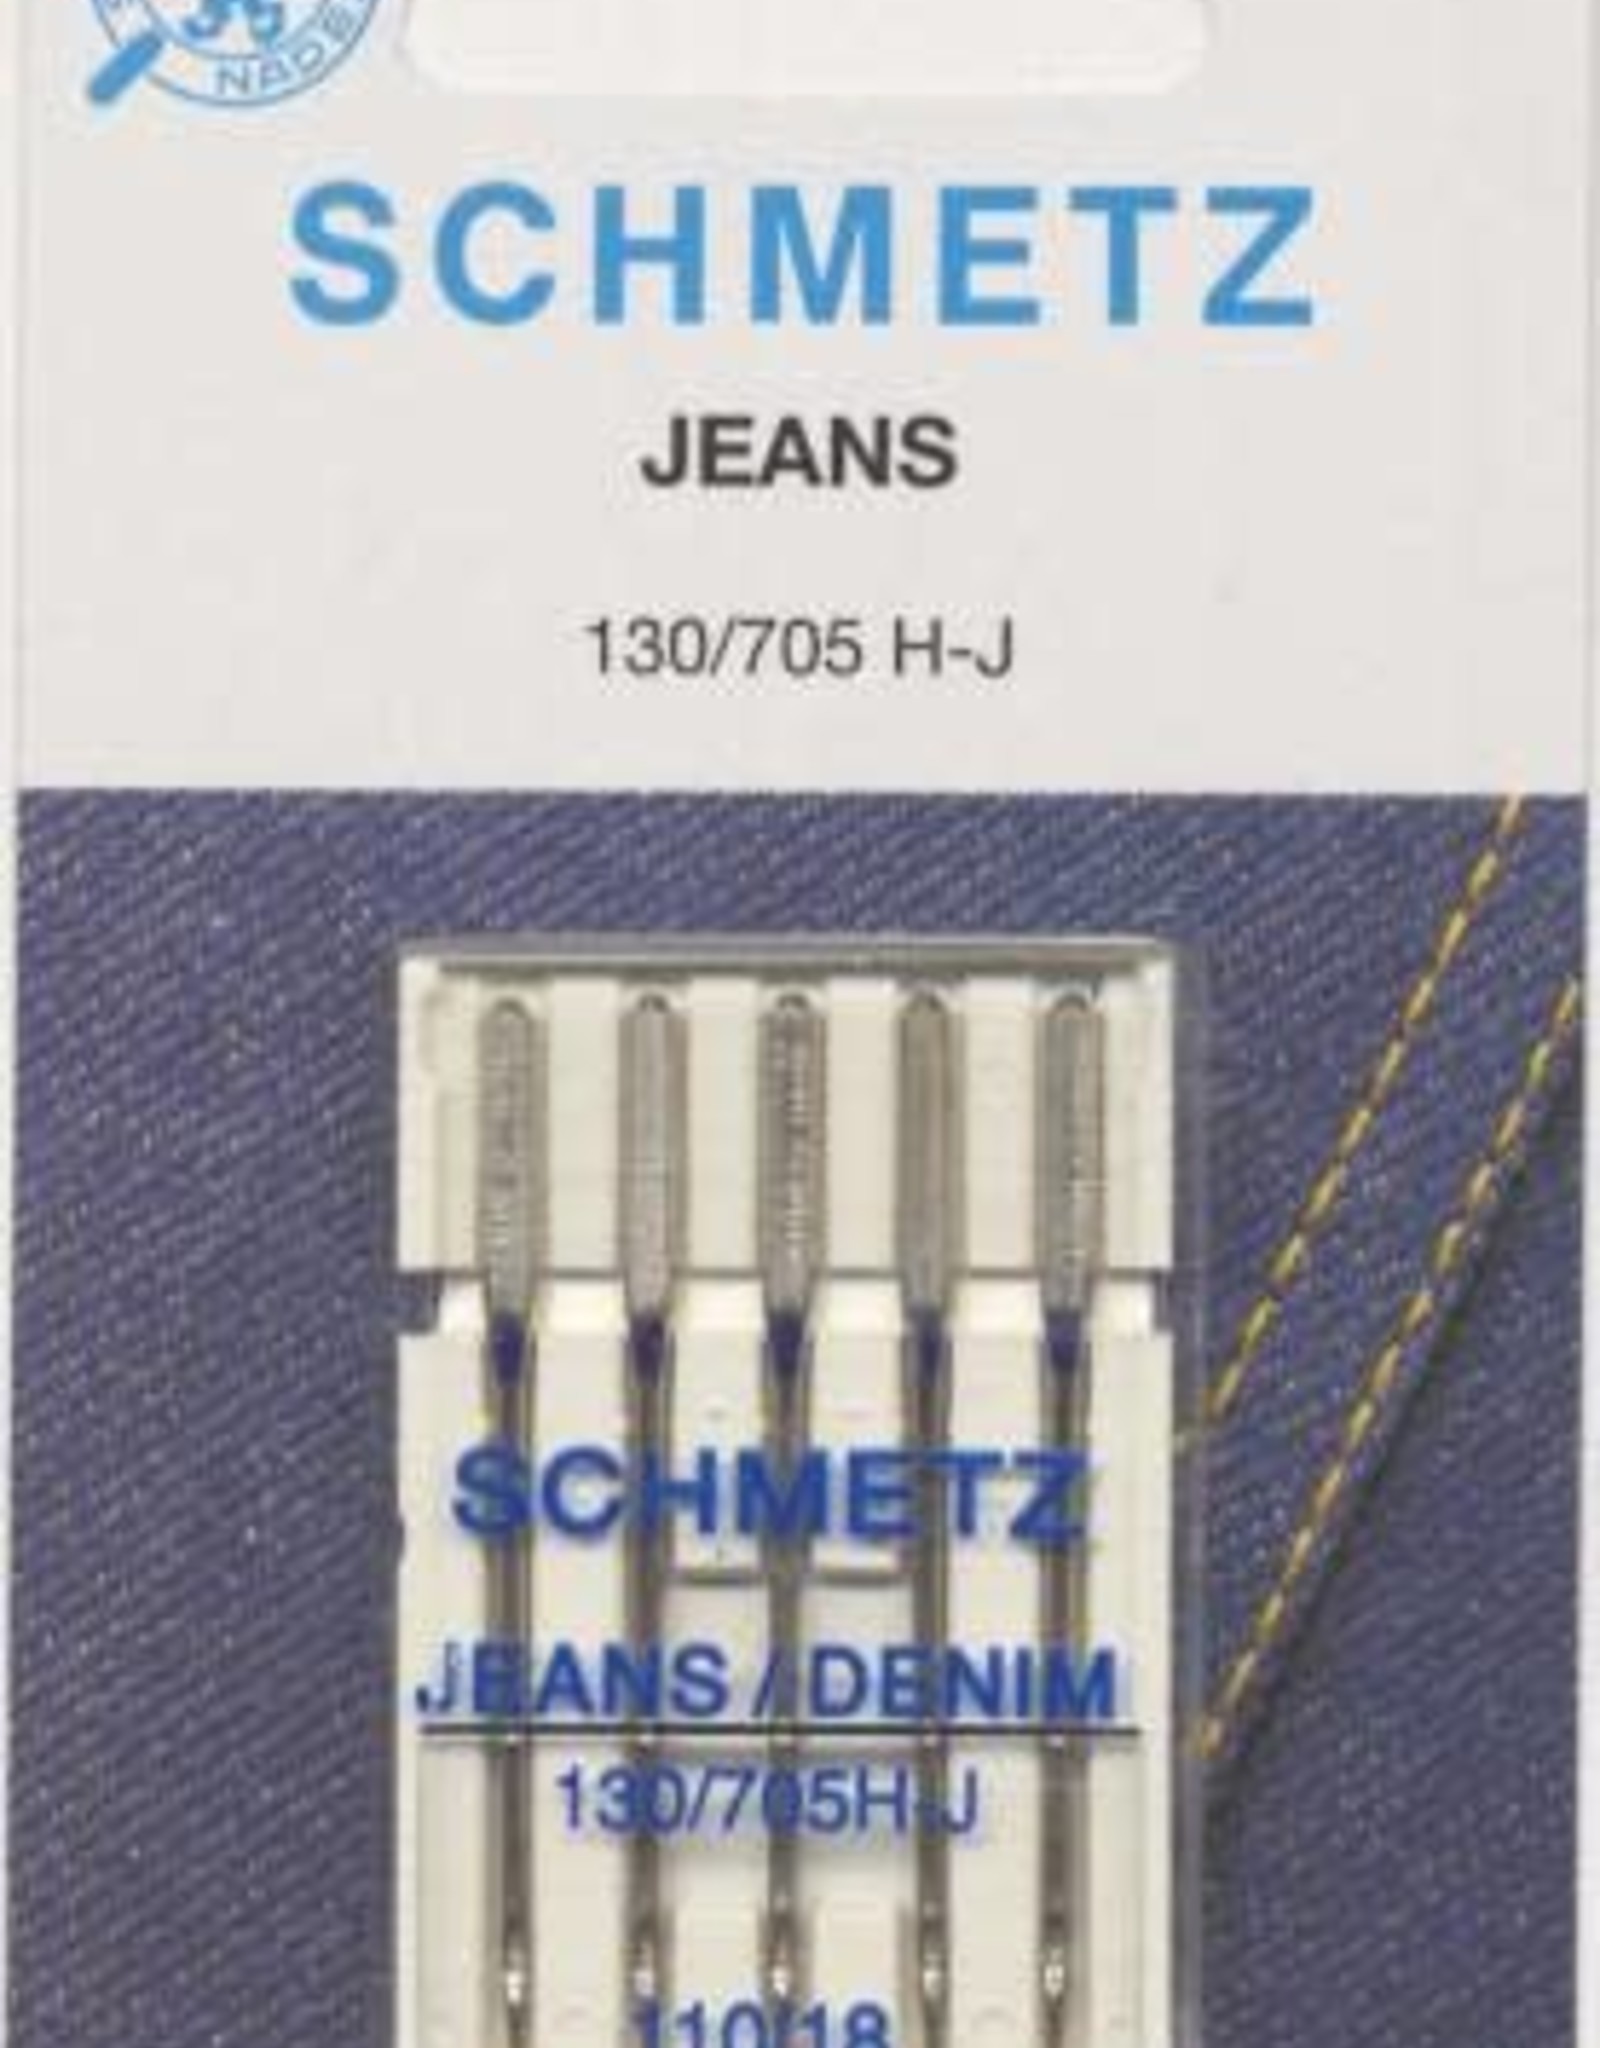 Schmetz Schmetz Denim/Jeans Needles  90/14  130/705H